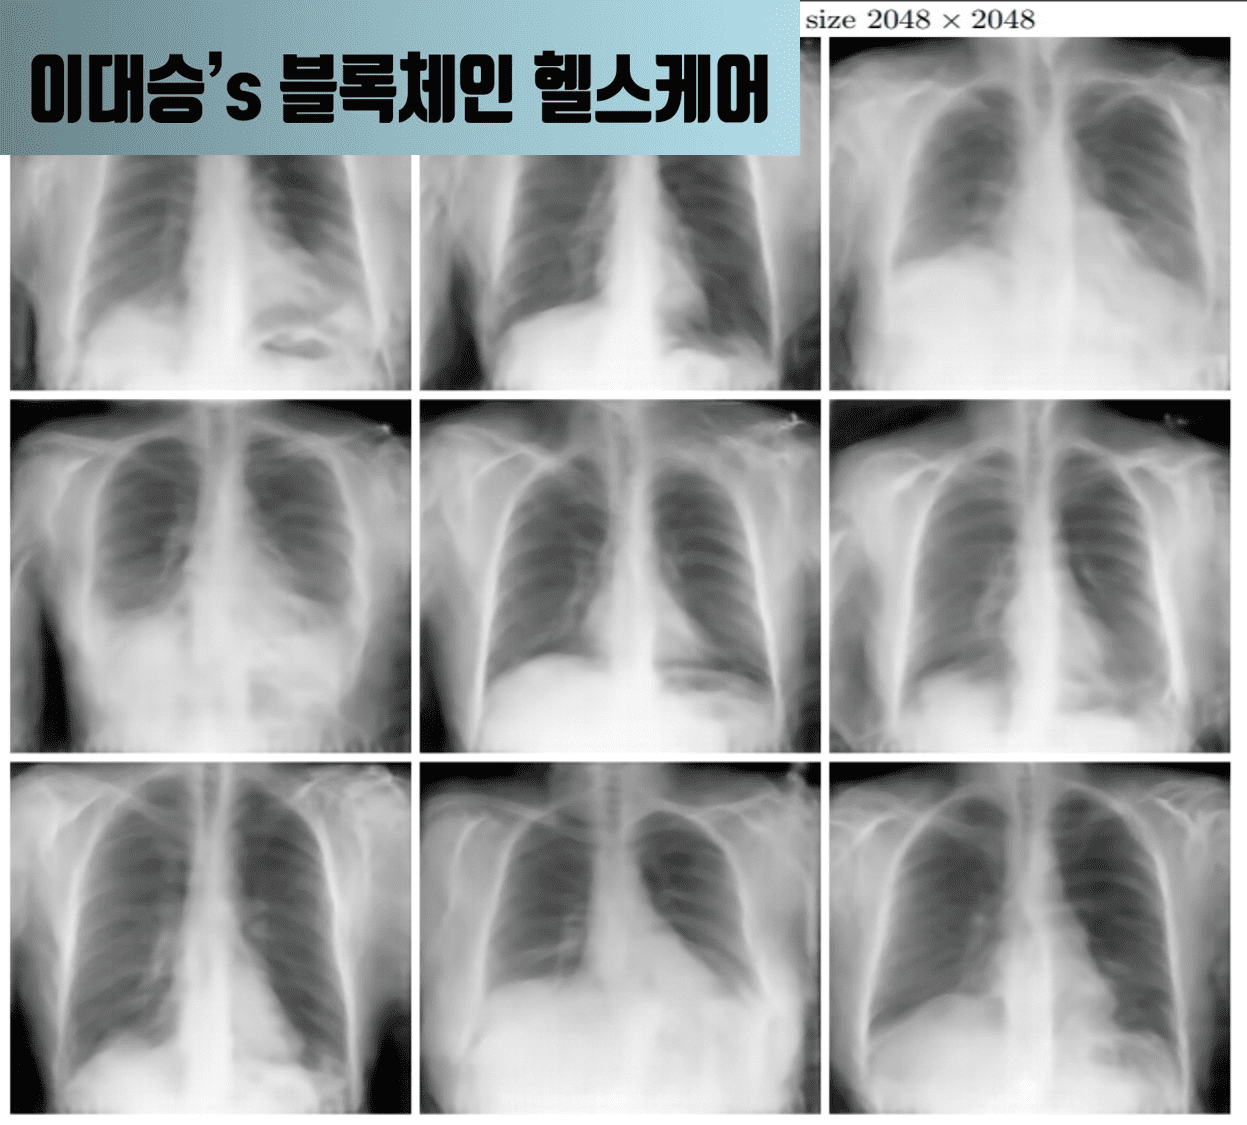 [이대승] 내 X-ray 사진이 은밀하게 누출되면 어떻게합니까?